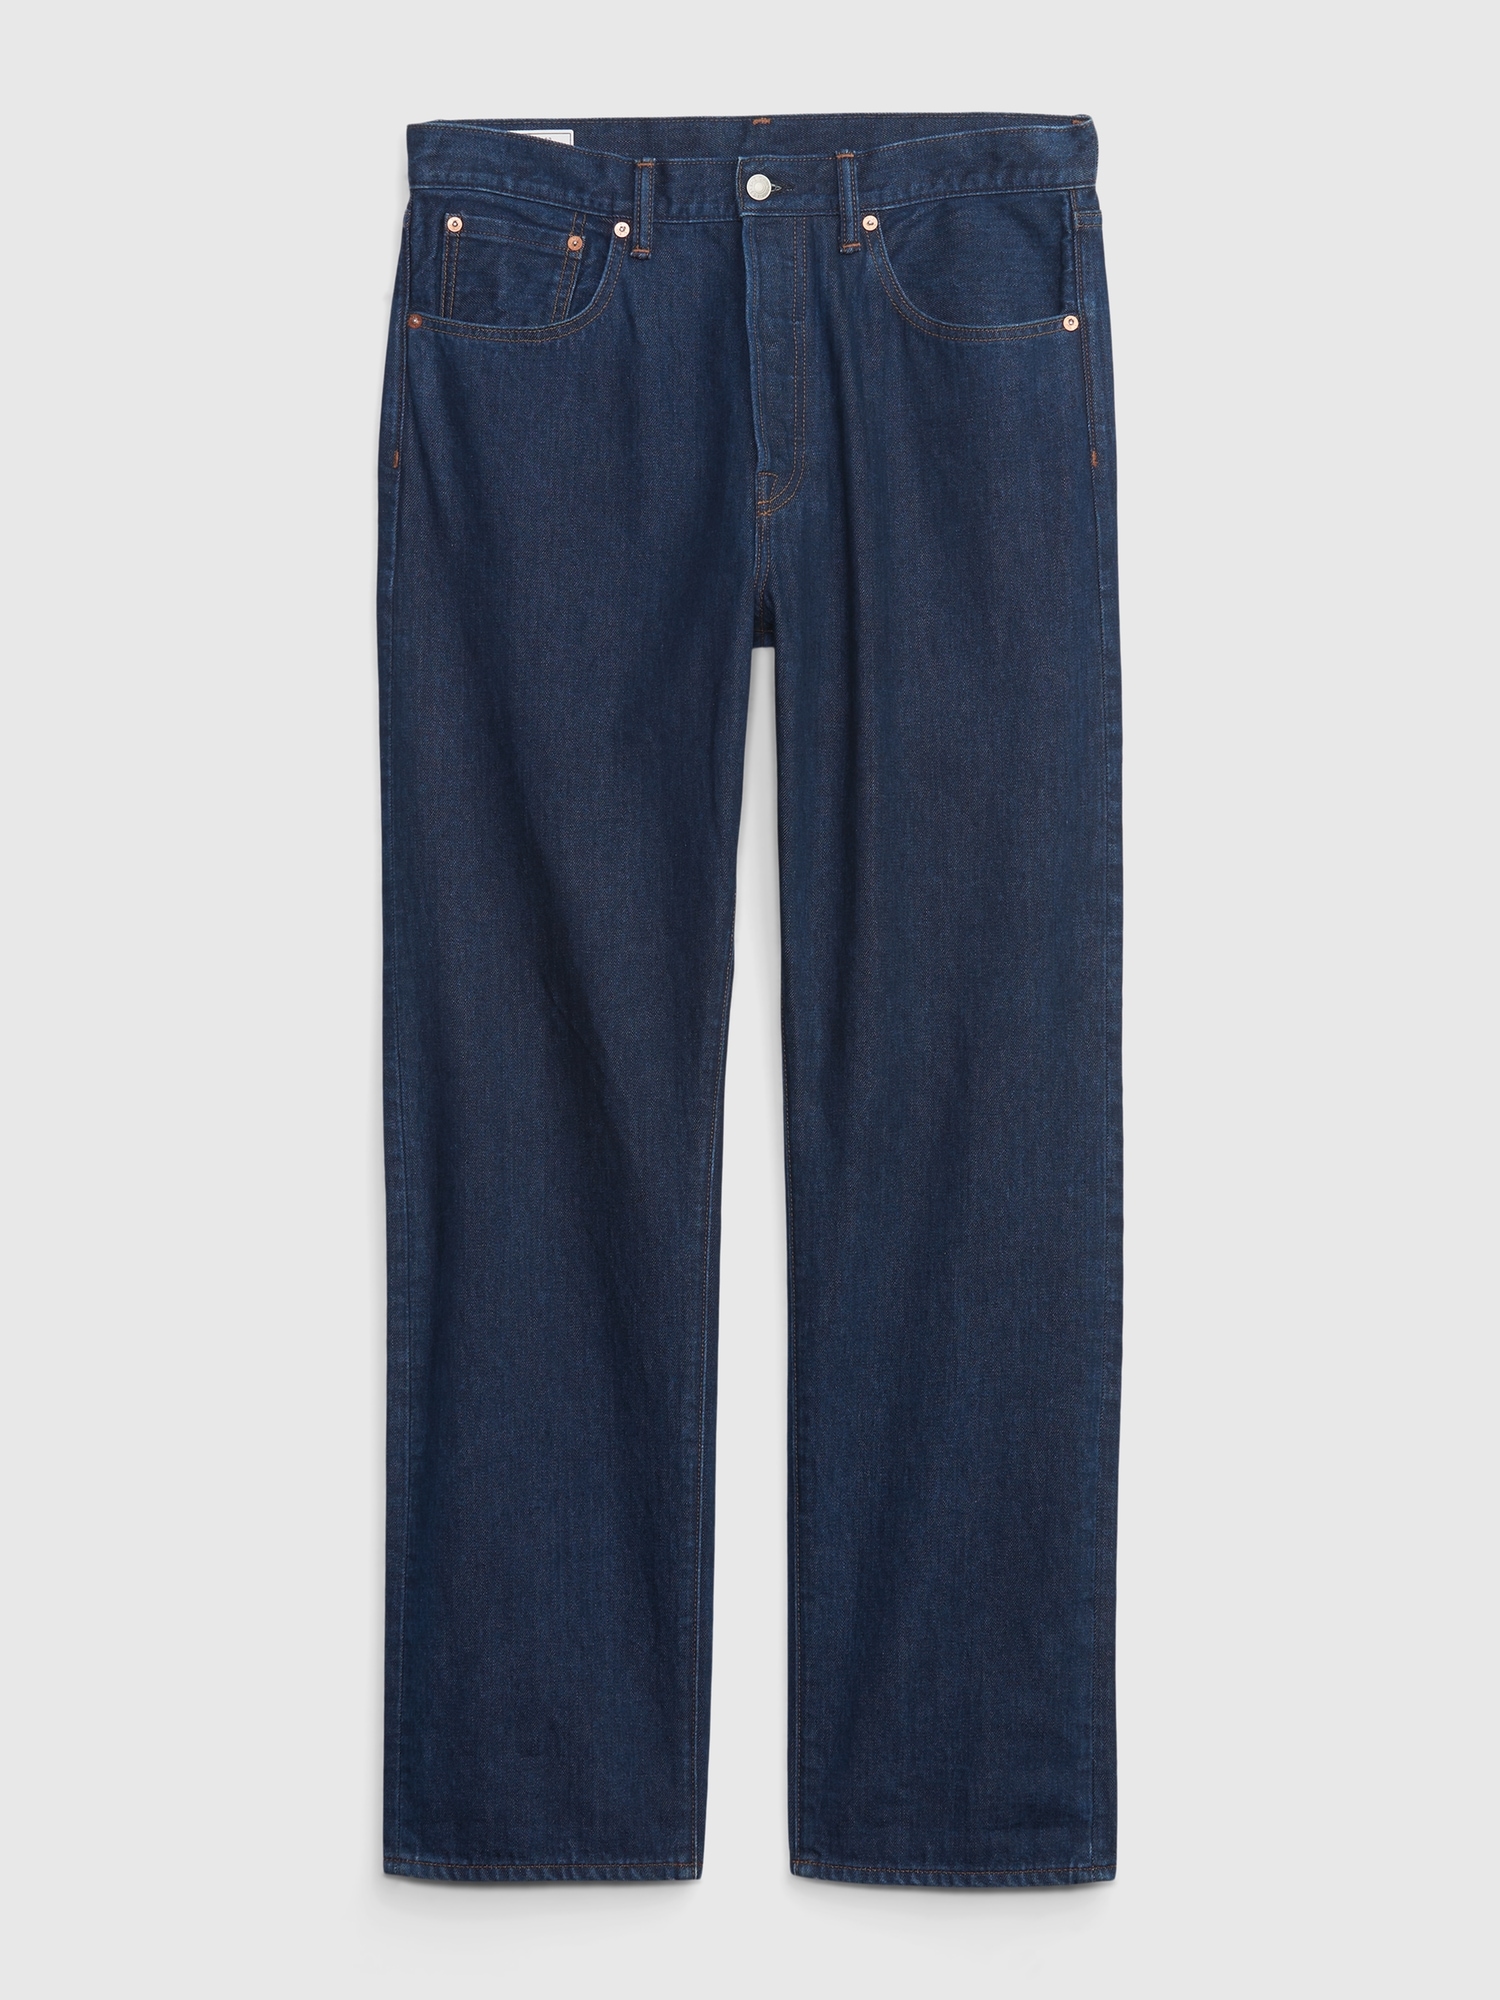 Levi's Vintage 1954 501 Jeans - Blue Rigid 32 34